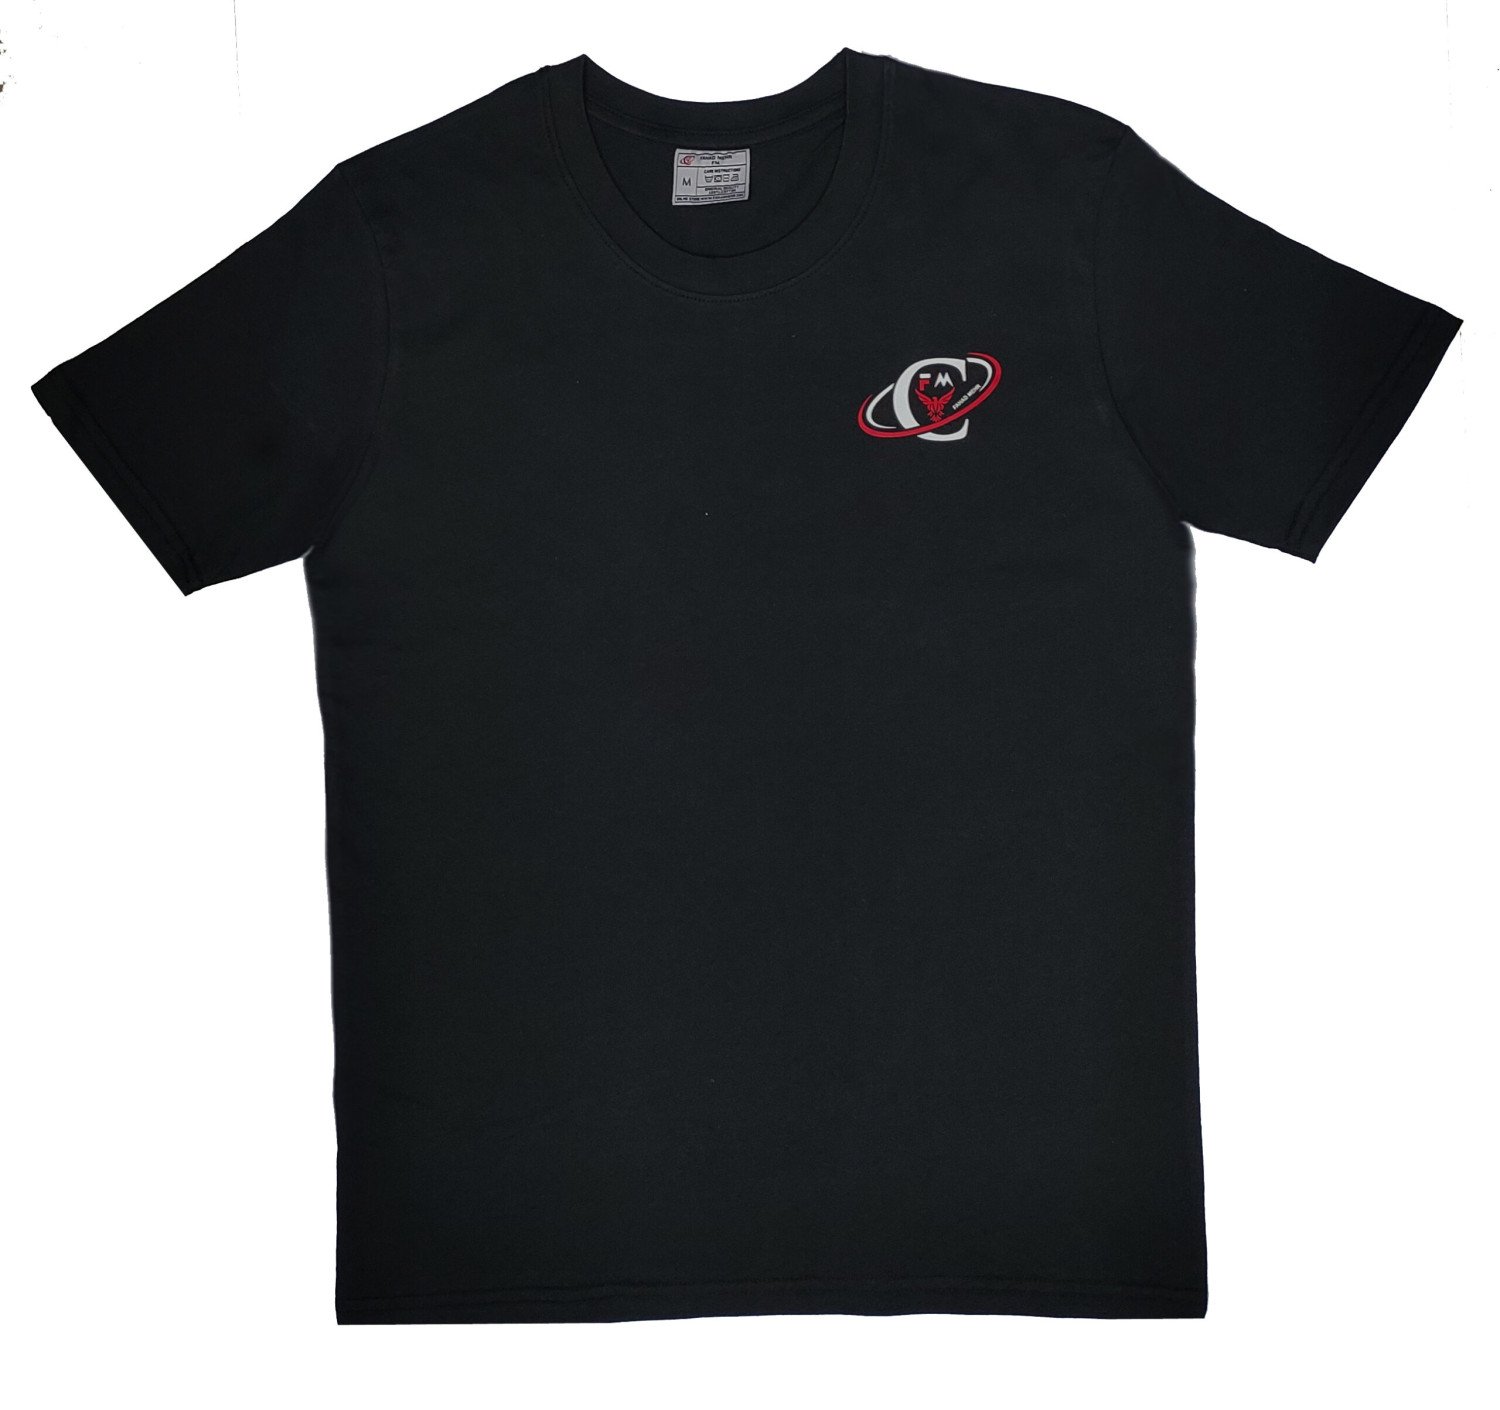 FM Premium Cotton T-Shirt Black